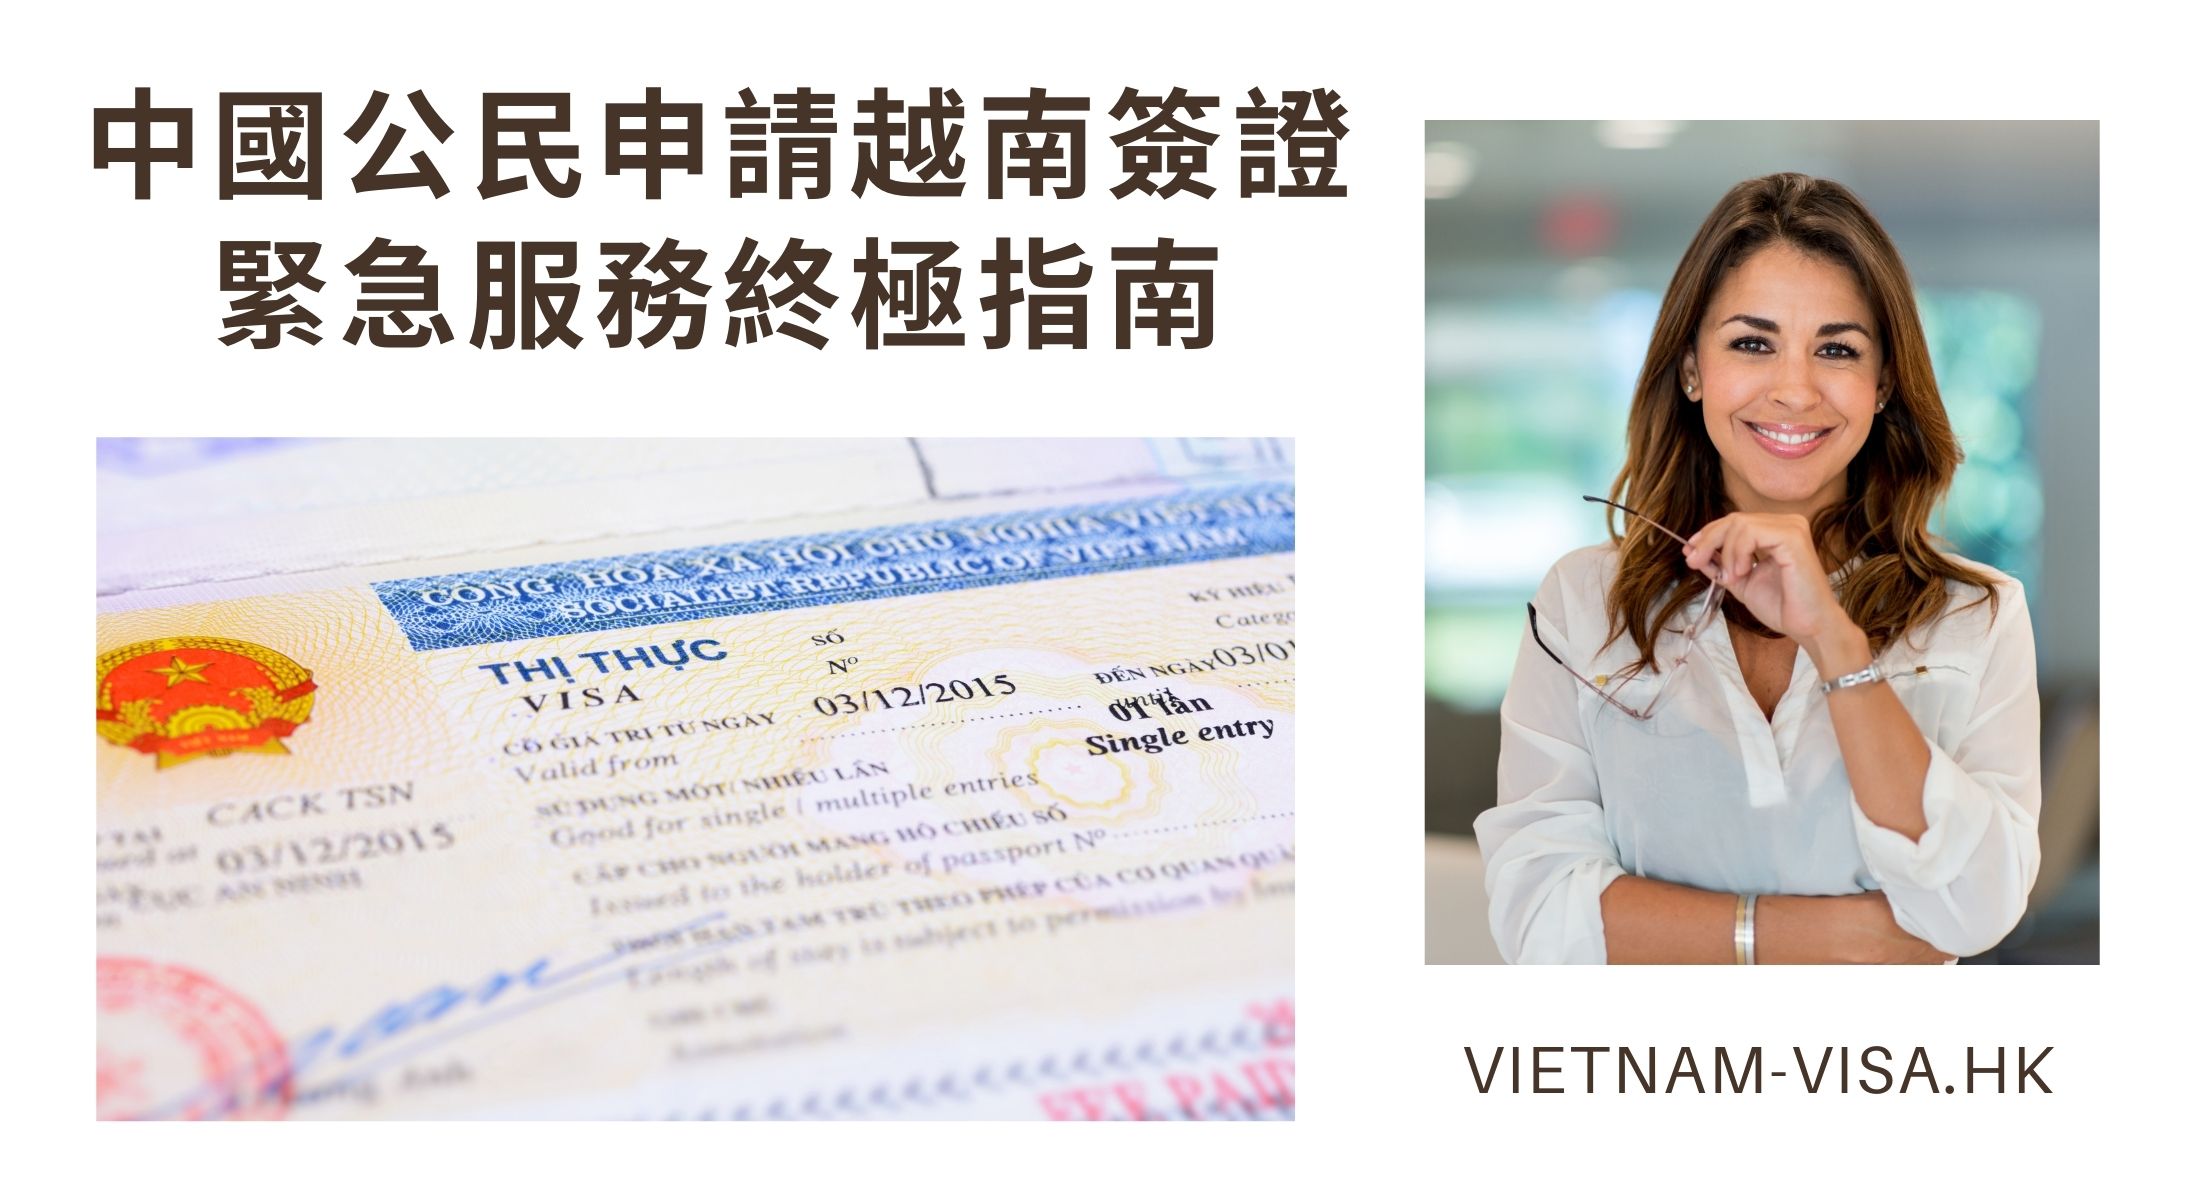 中國公民申請越南簽證緊急服務終極指南